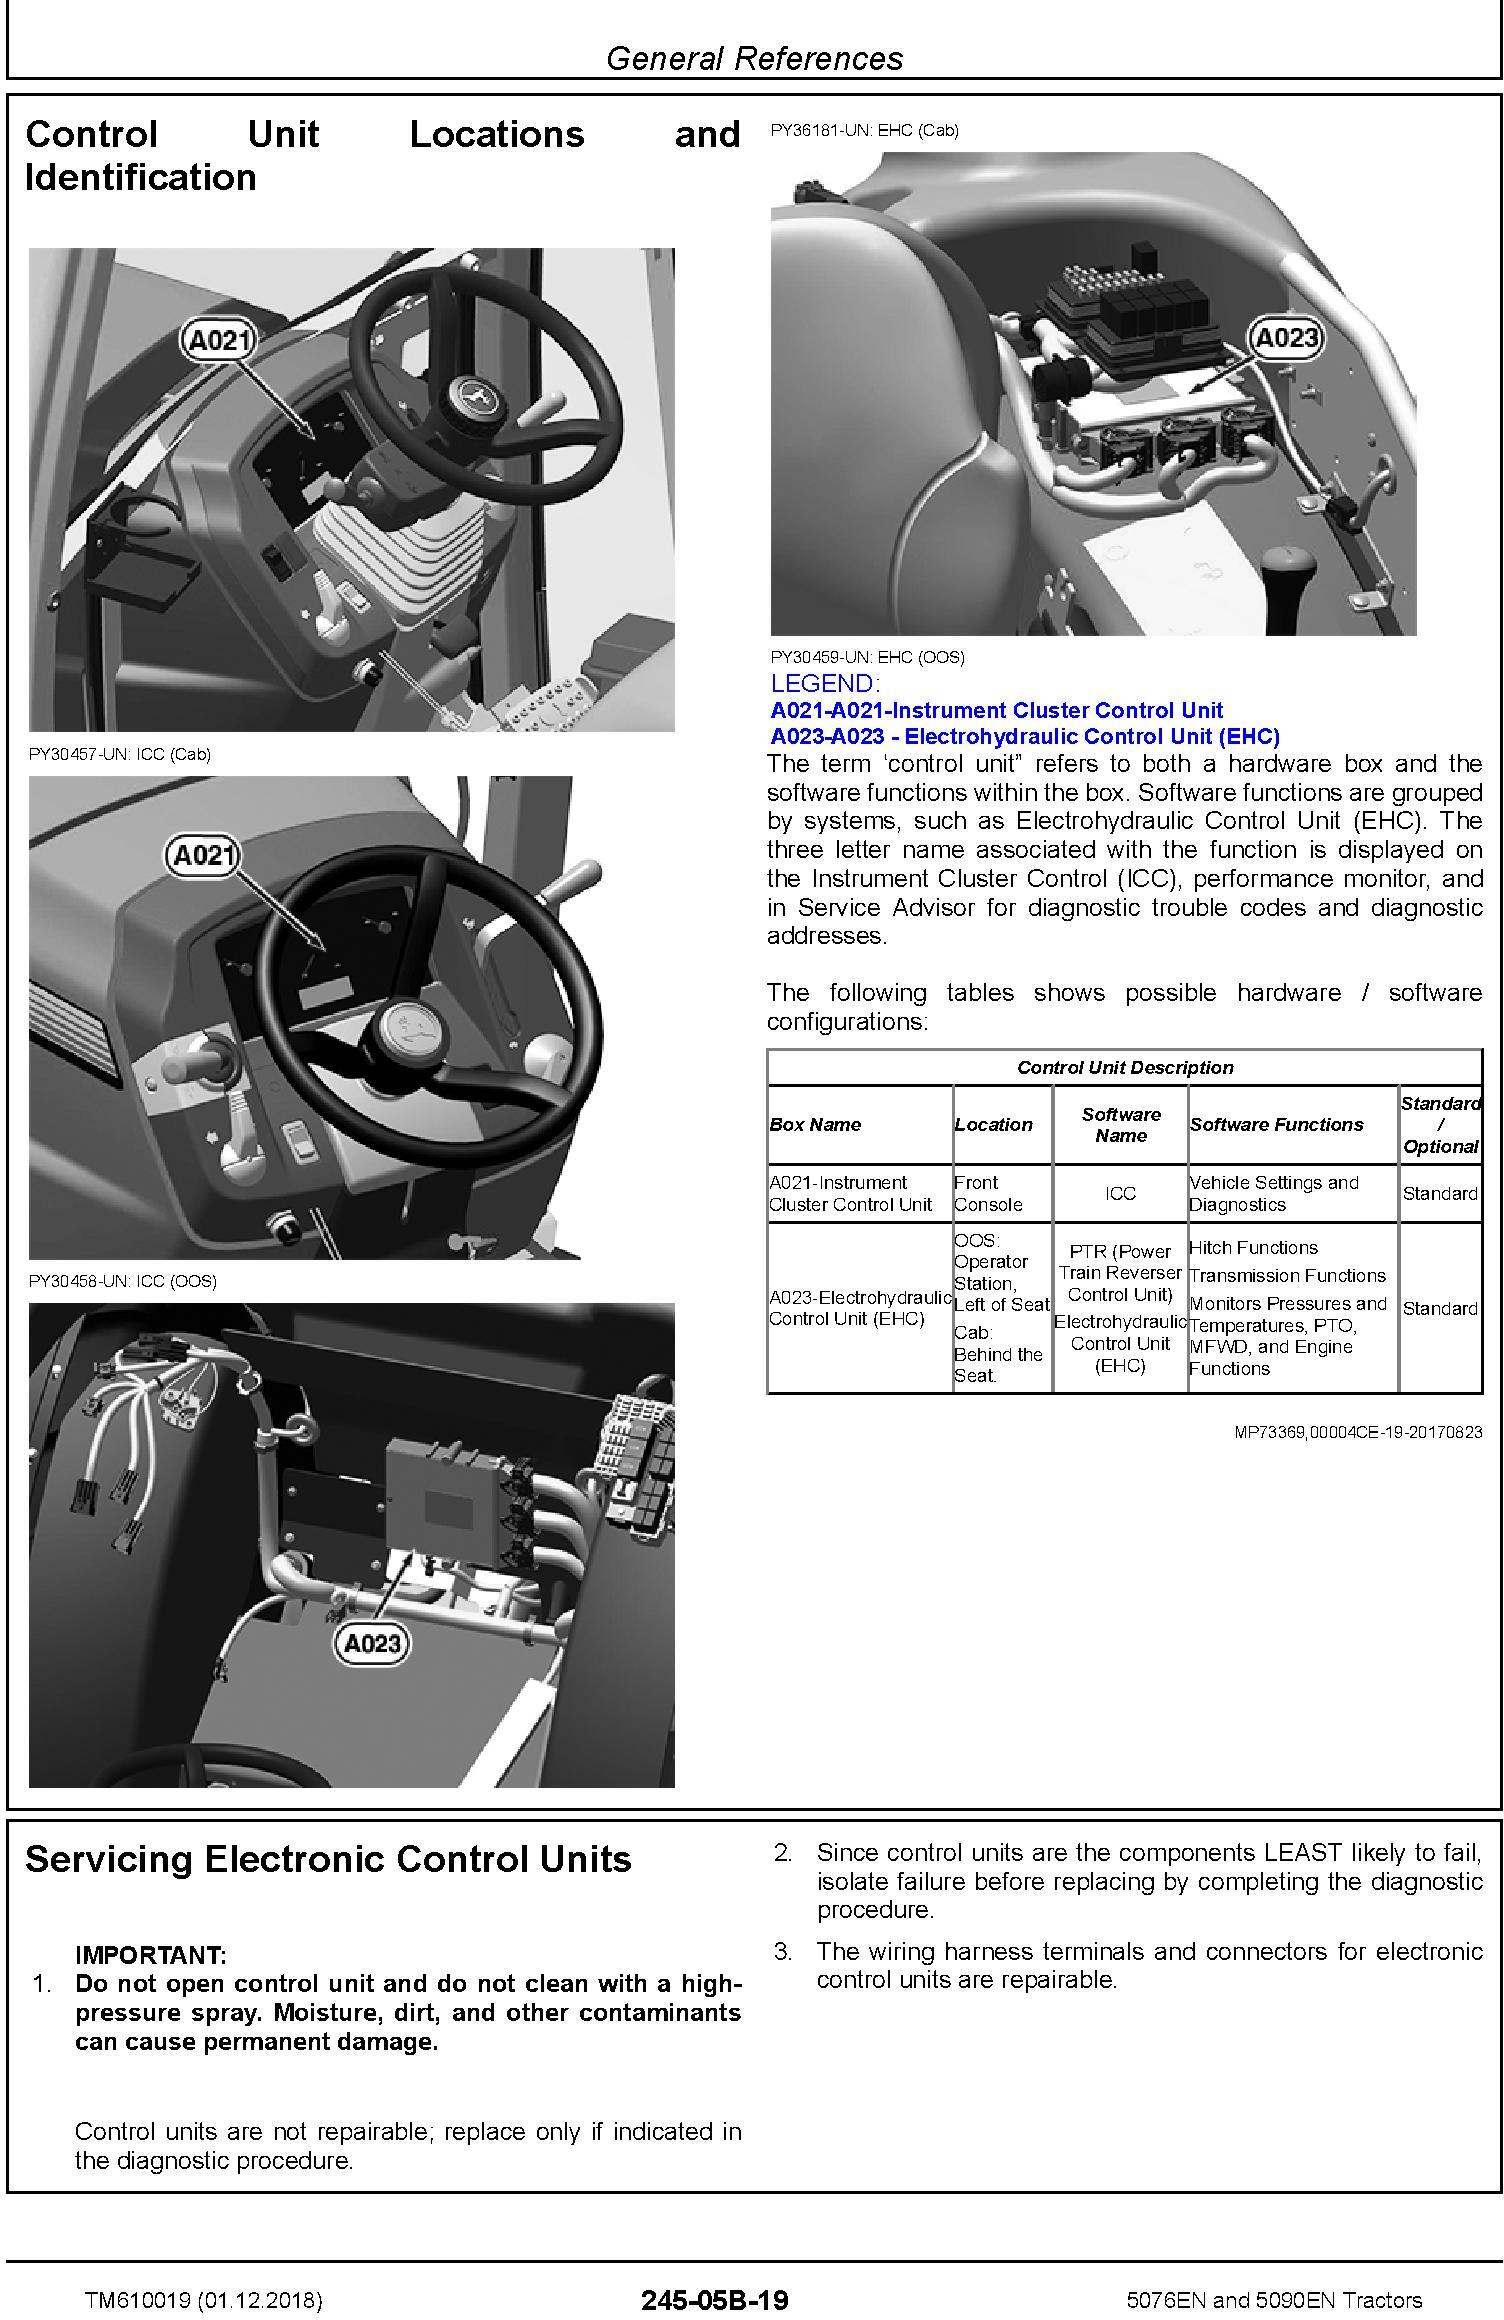 John Deere 5076EN and 5090EN Tractors Diagnostic Technical Service Manual (TM610019) - 2